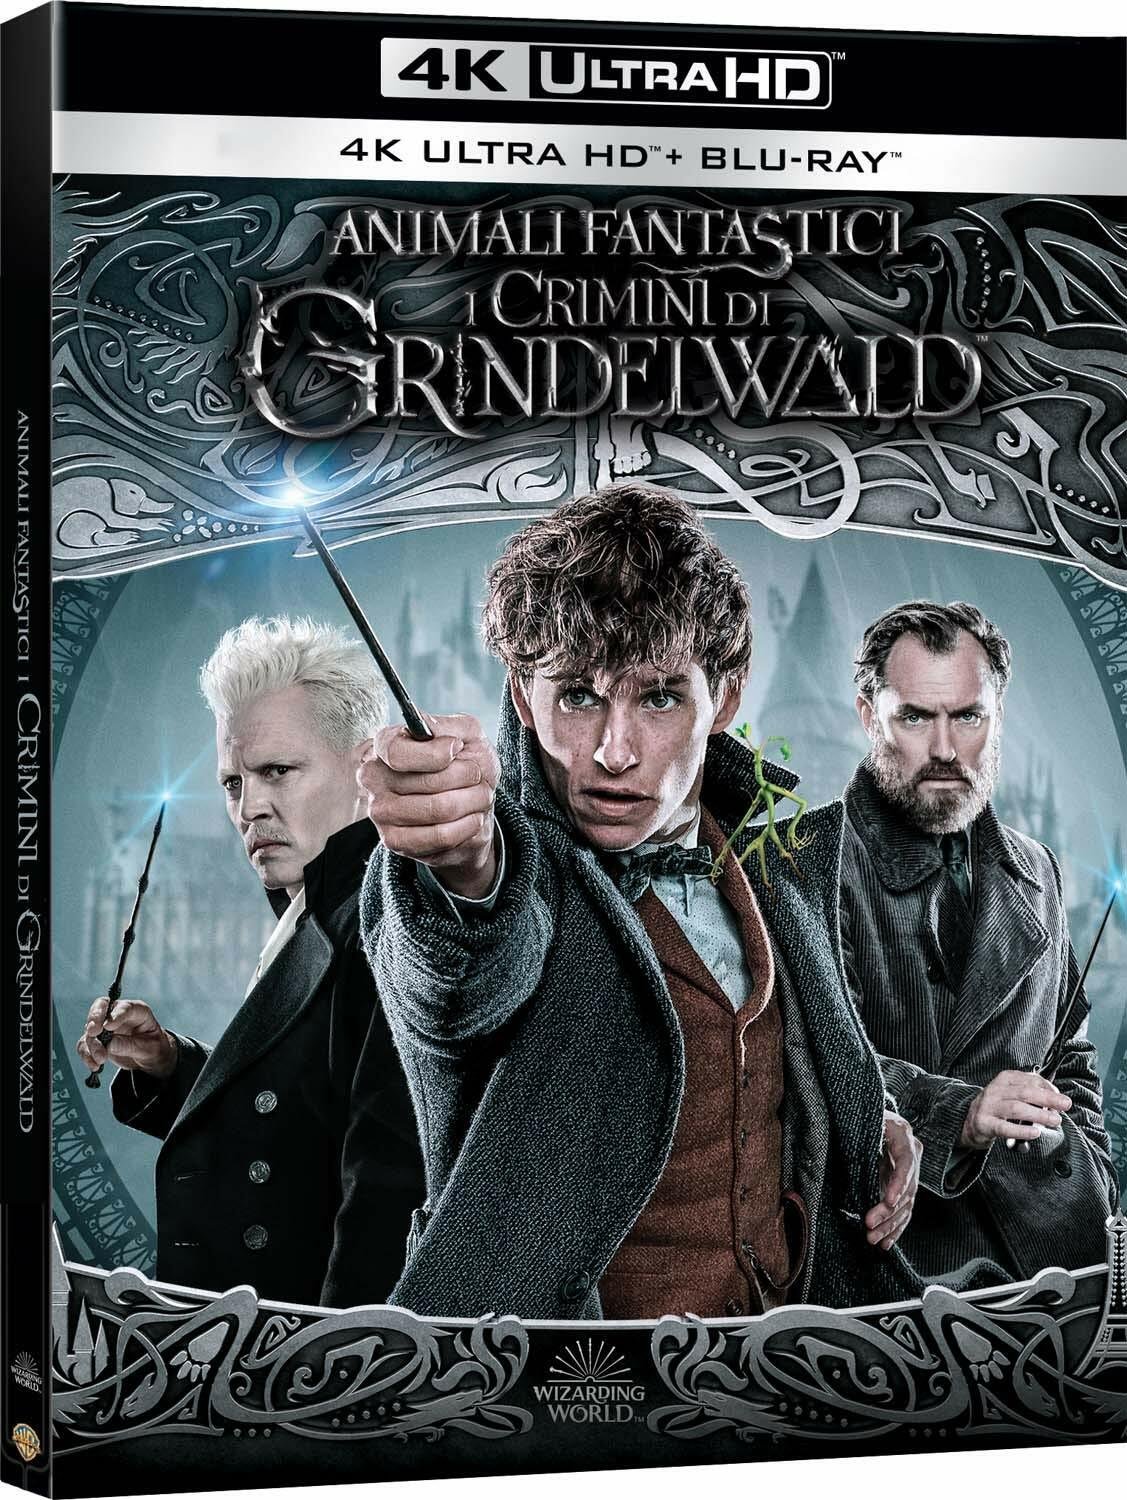 La copertina del Blu-ray 4K UHD di Animali Fantastici: I Crimini di Grindelwald